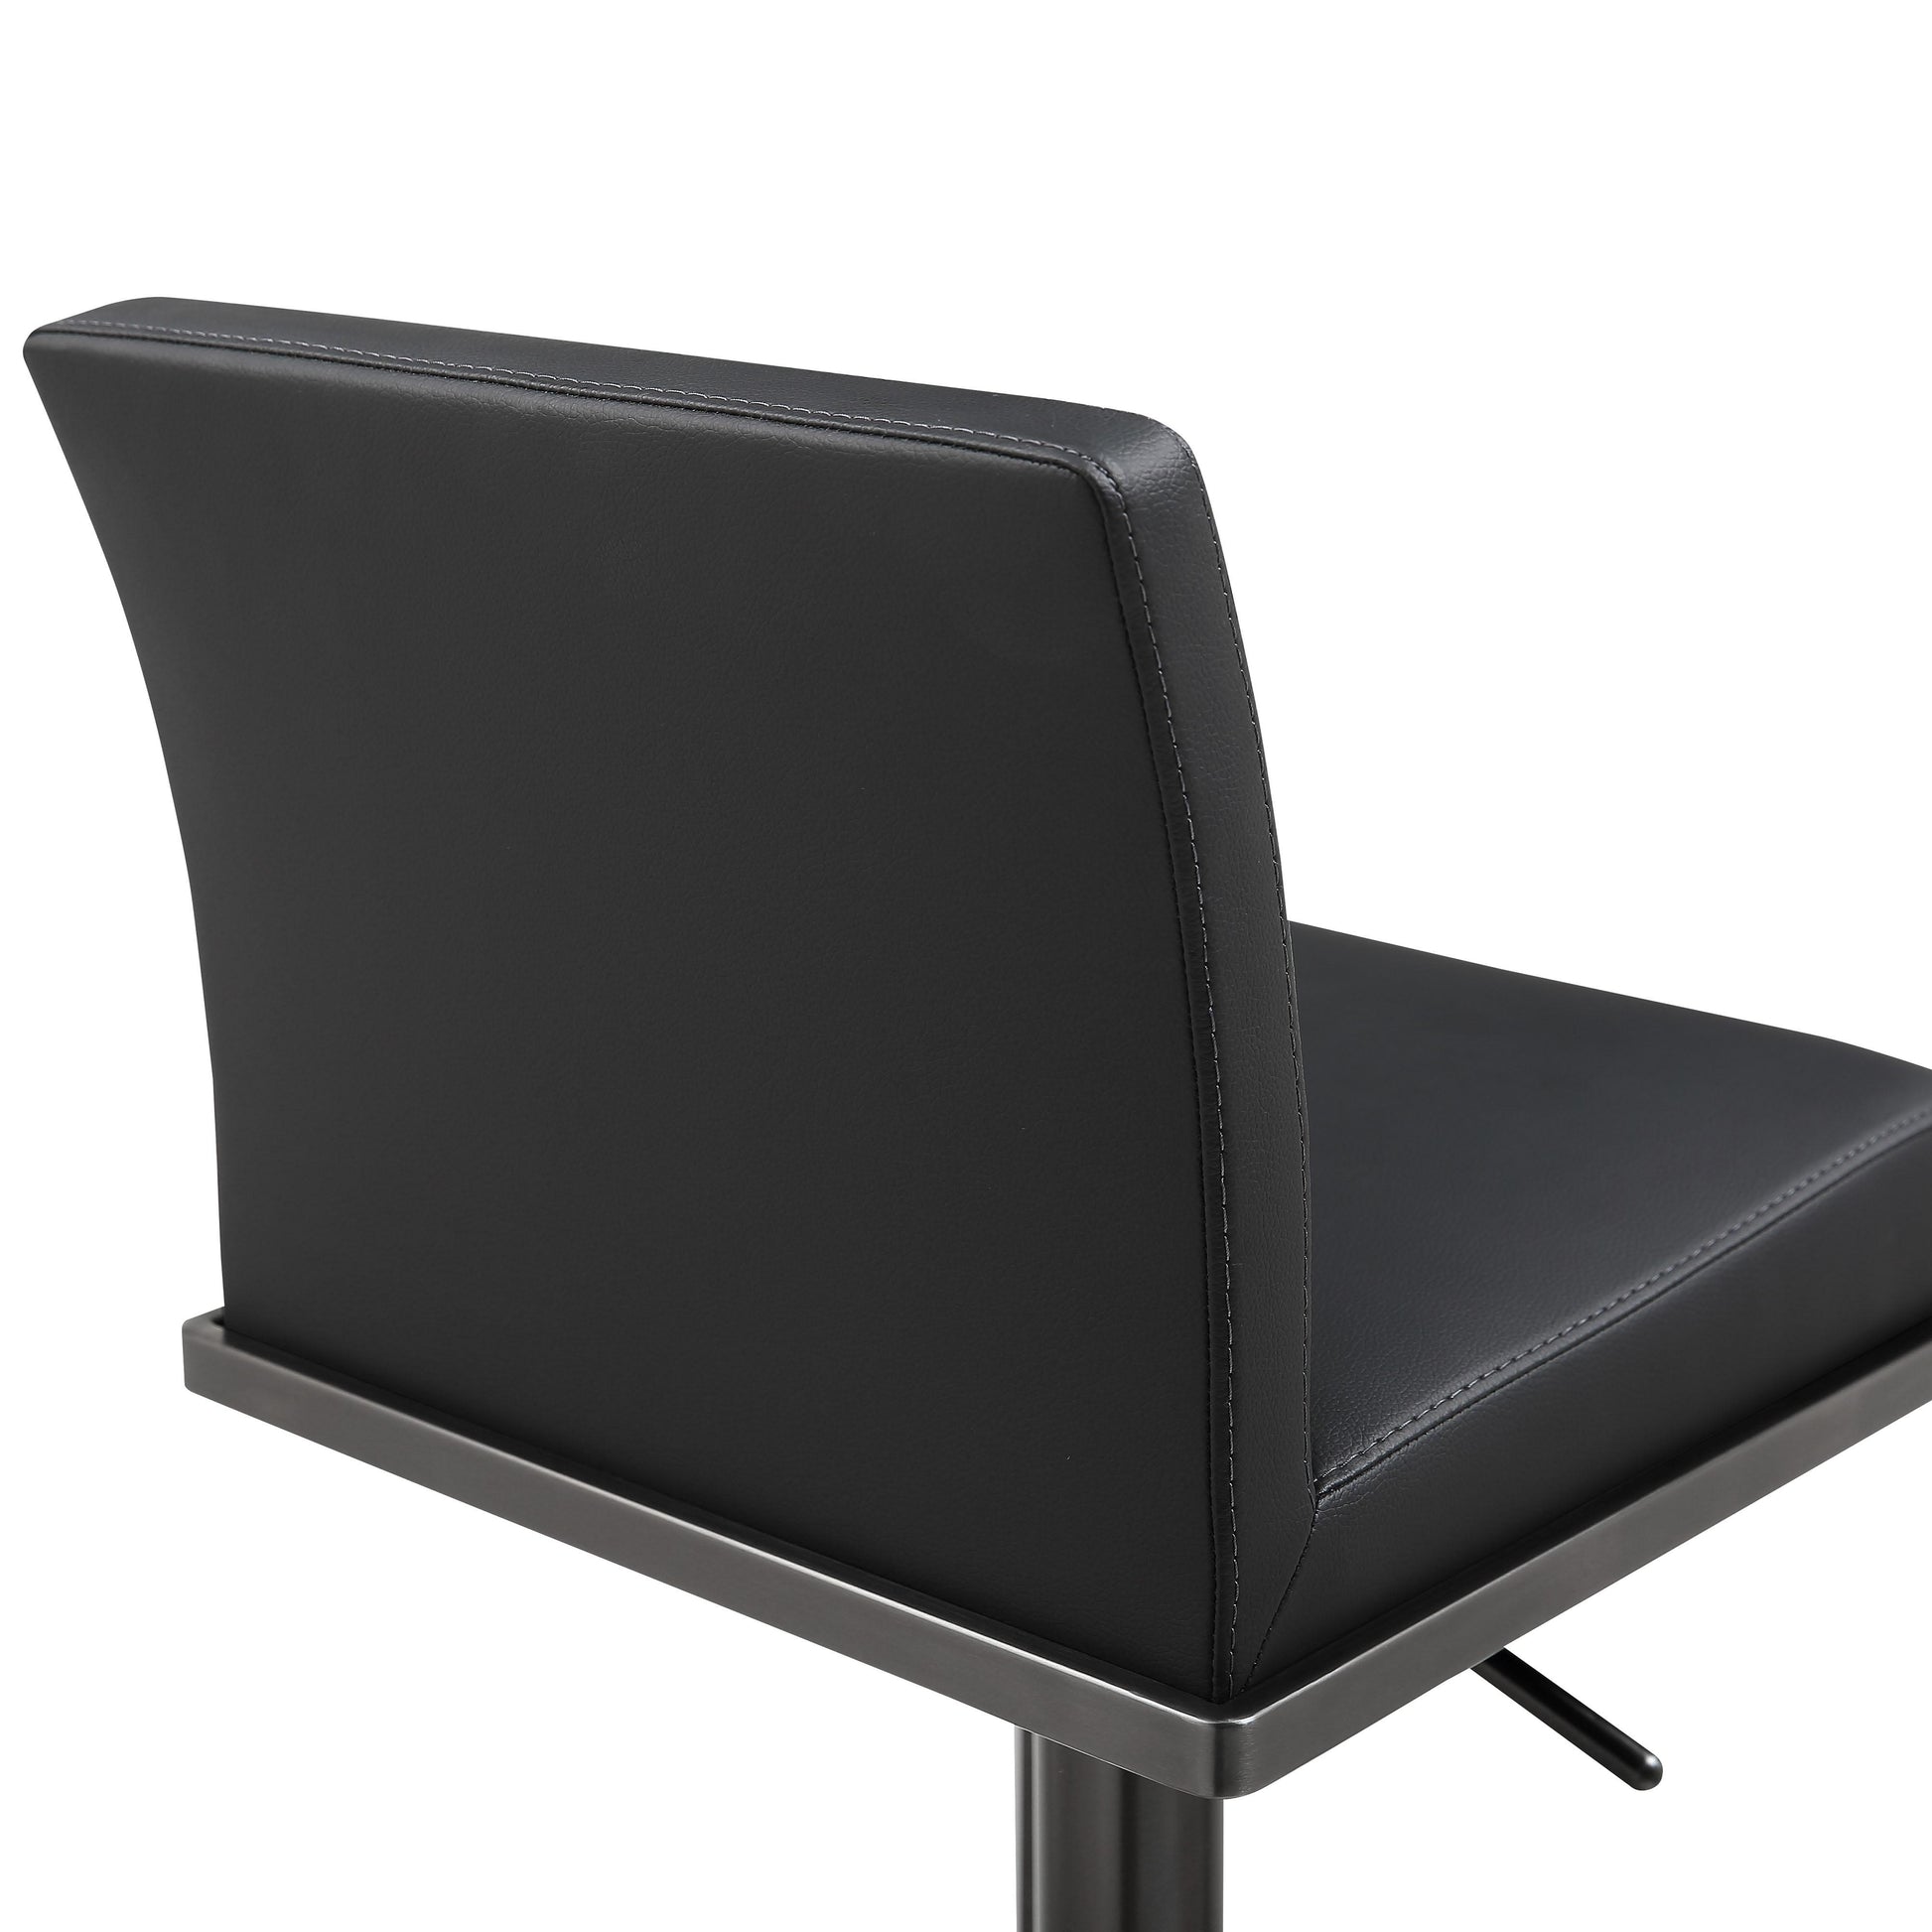 Amalfi Black Furniture Leather Stool – Adjustable Black Vegan TOV on